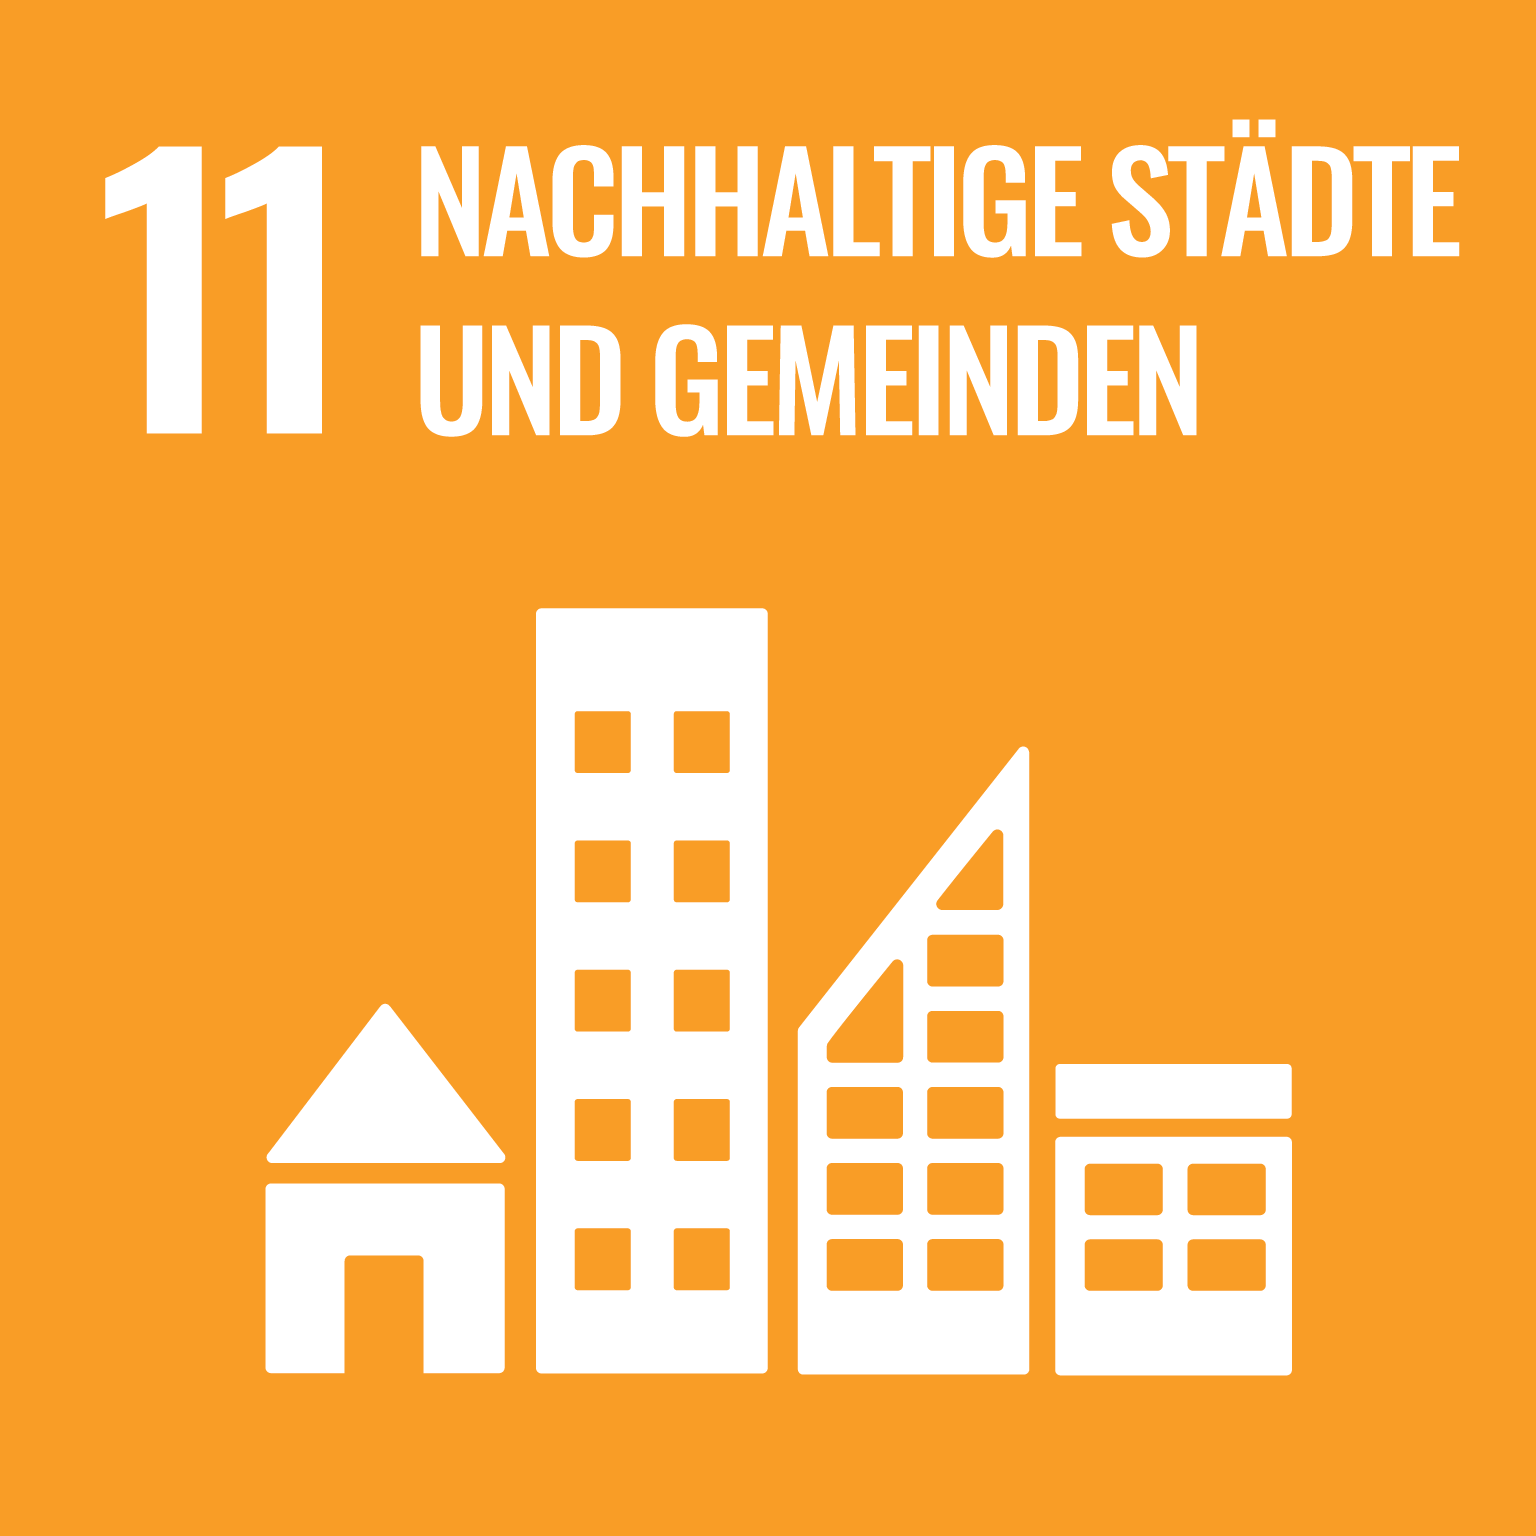 social development goal 11: nachhaltige Städte und Gemeinden